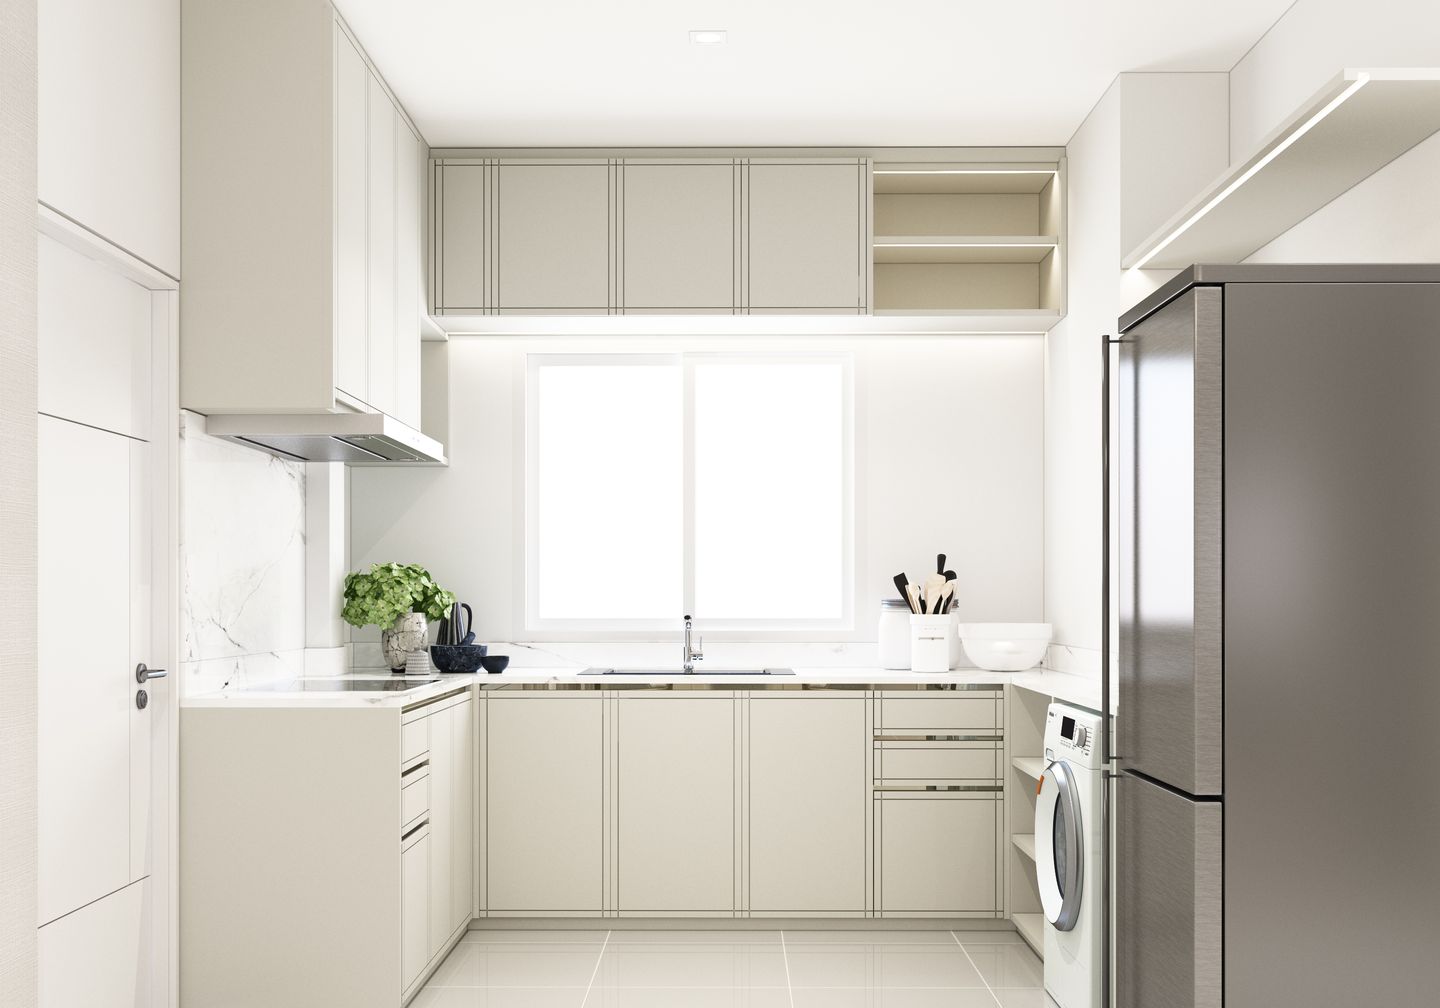 Desain dapur letter u yang menawan dengan interior berwarna putih.